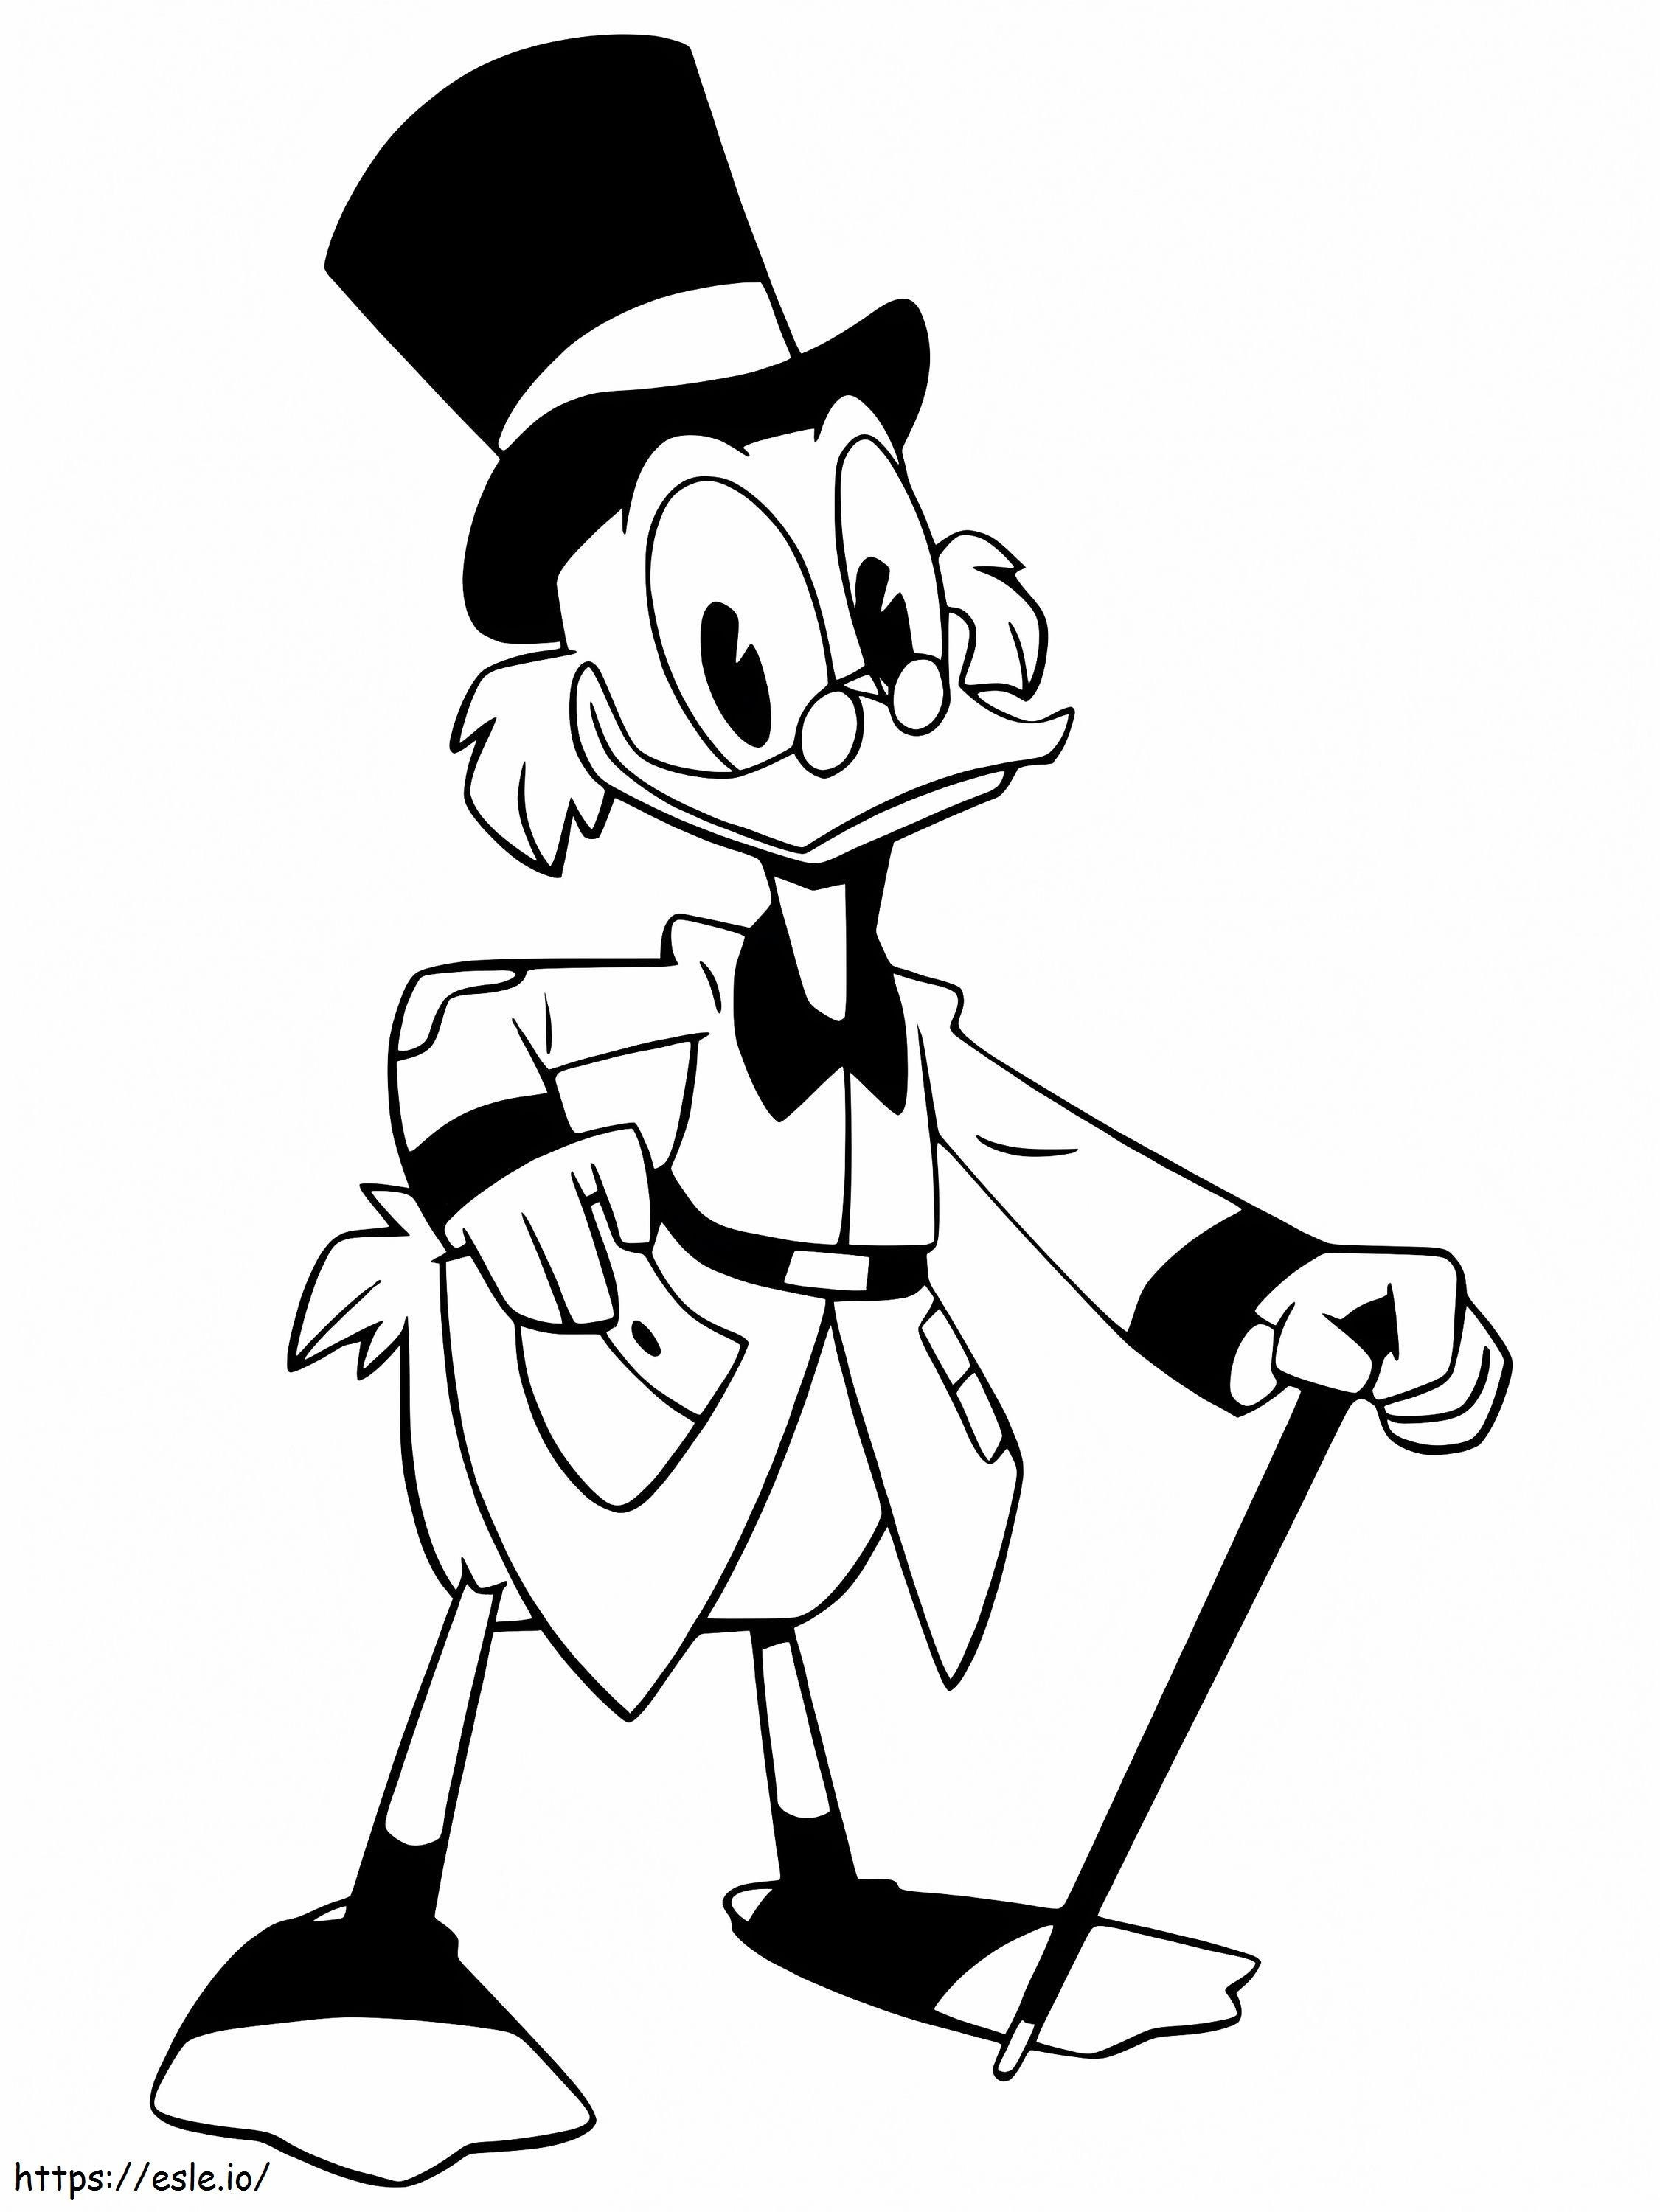 Scrooge McDuck din Ducktales de colorat